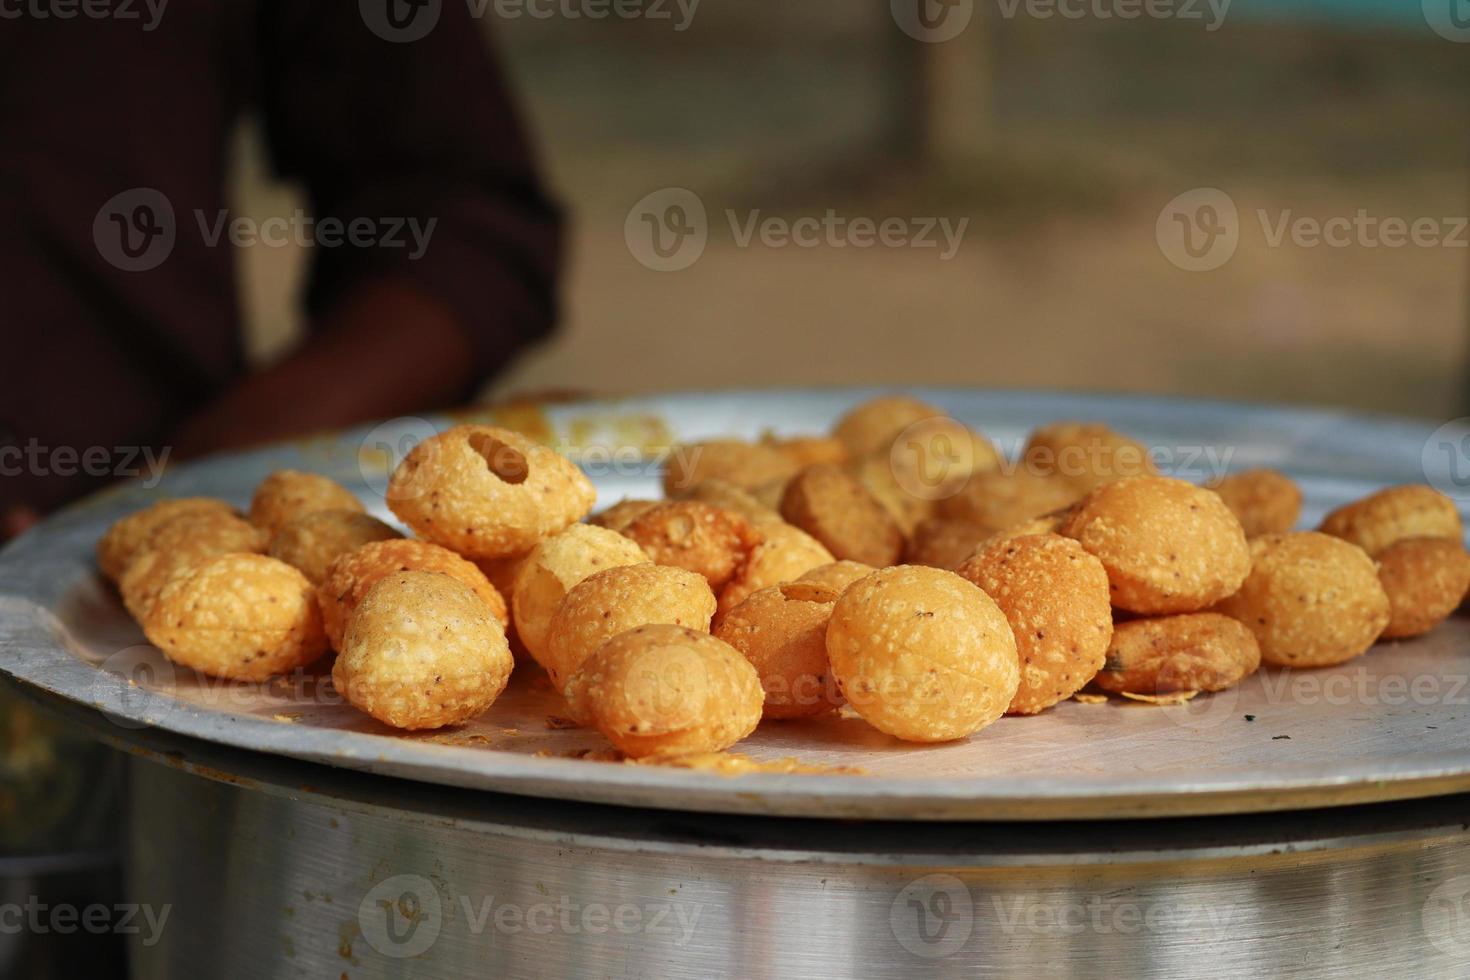 fusca chopoti est populaire rue nourriture de bangladesh et Inde. cette nourriture regards comme puces.a bord de la route magasin Indien bengali nourriture plat et pot testy et lucratif nourriture.la plat consiste principalement de patates photo